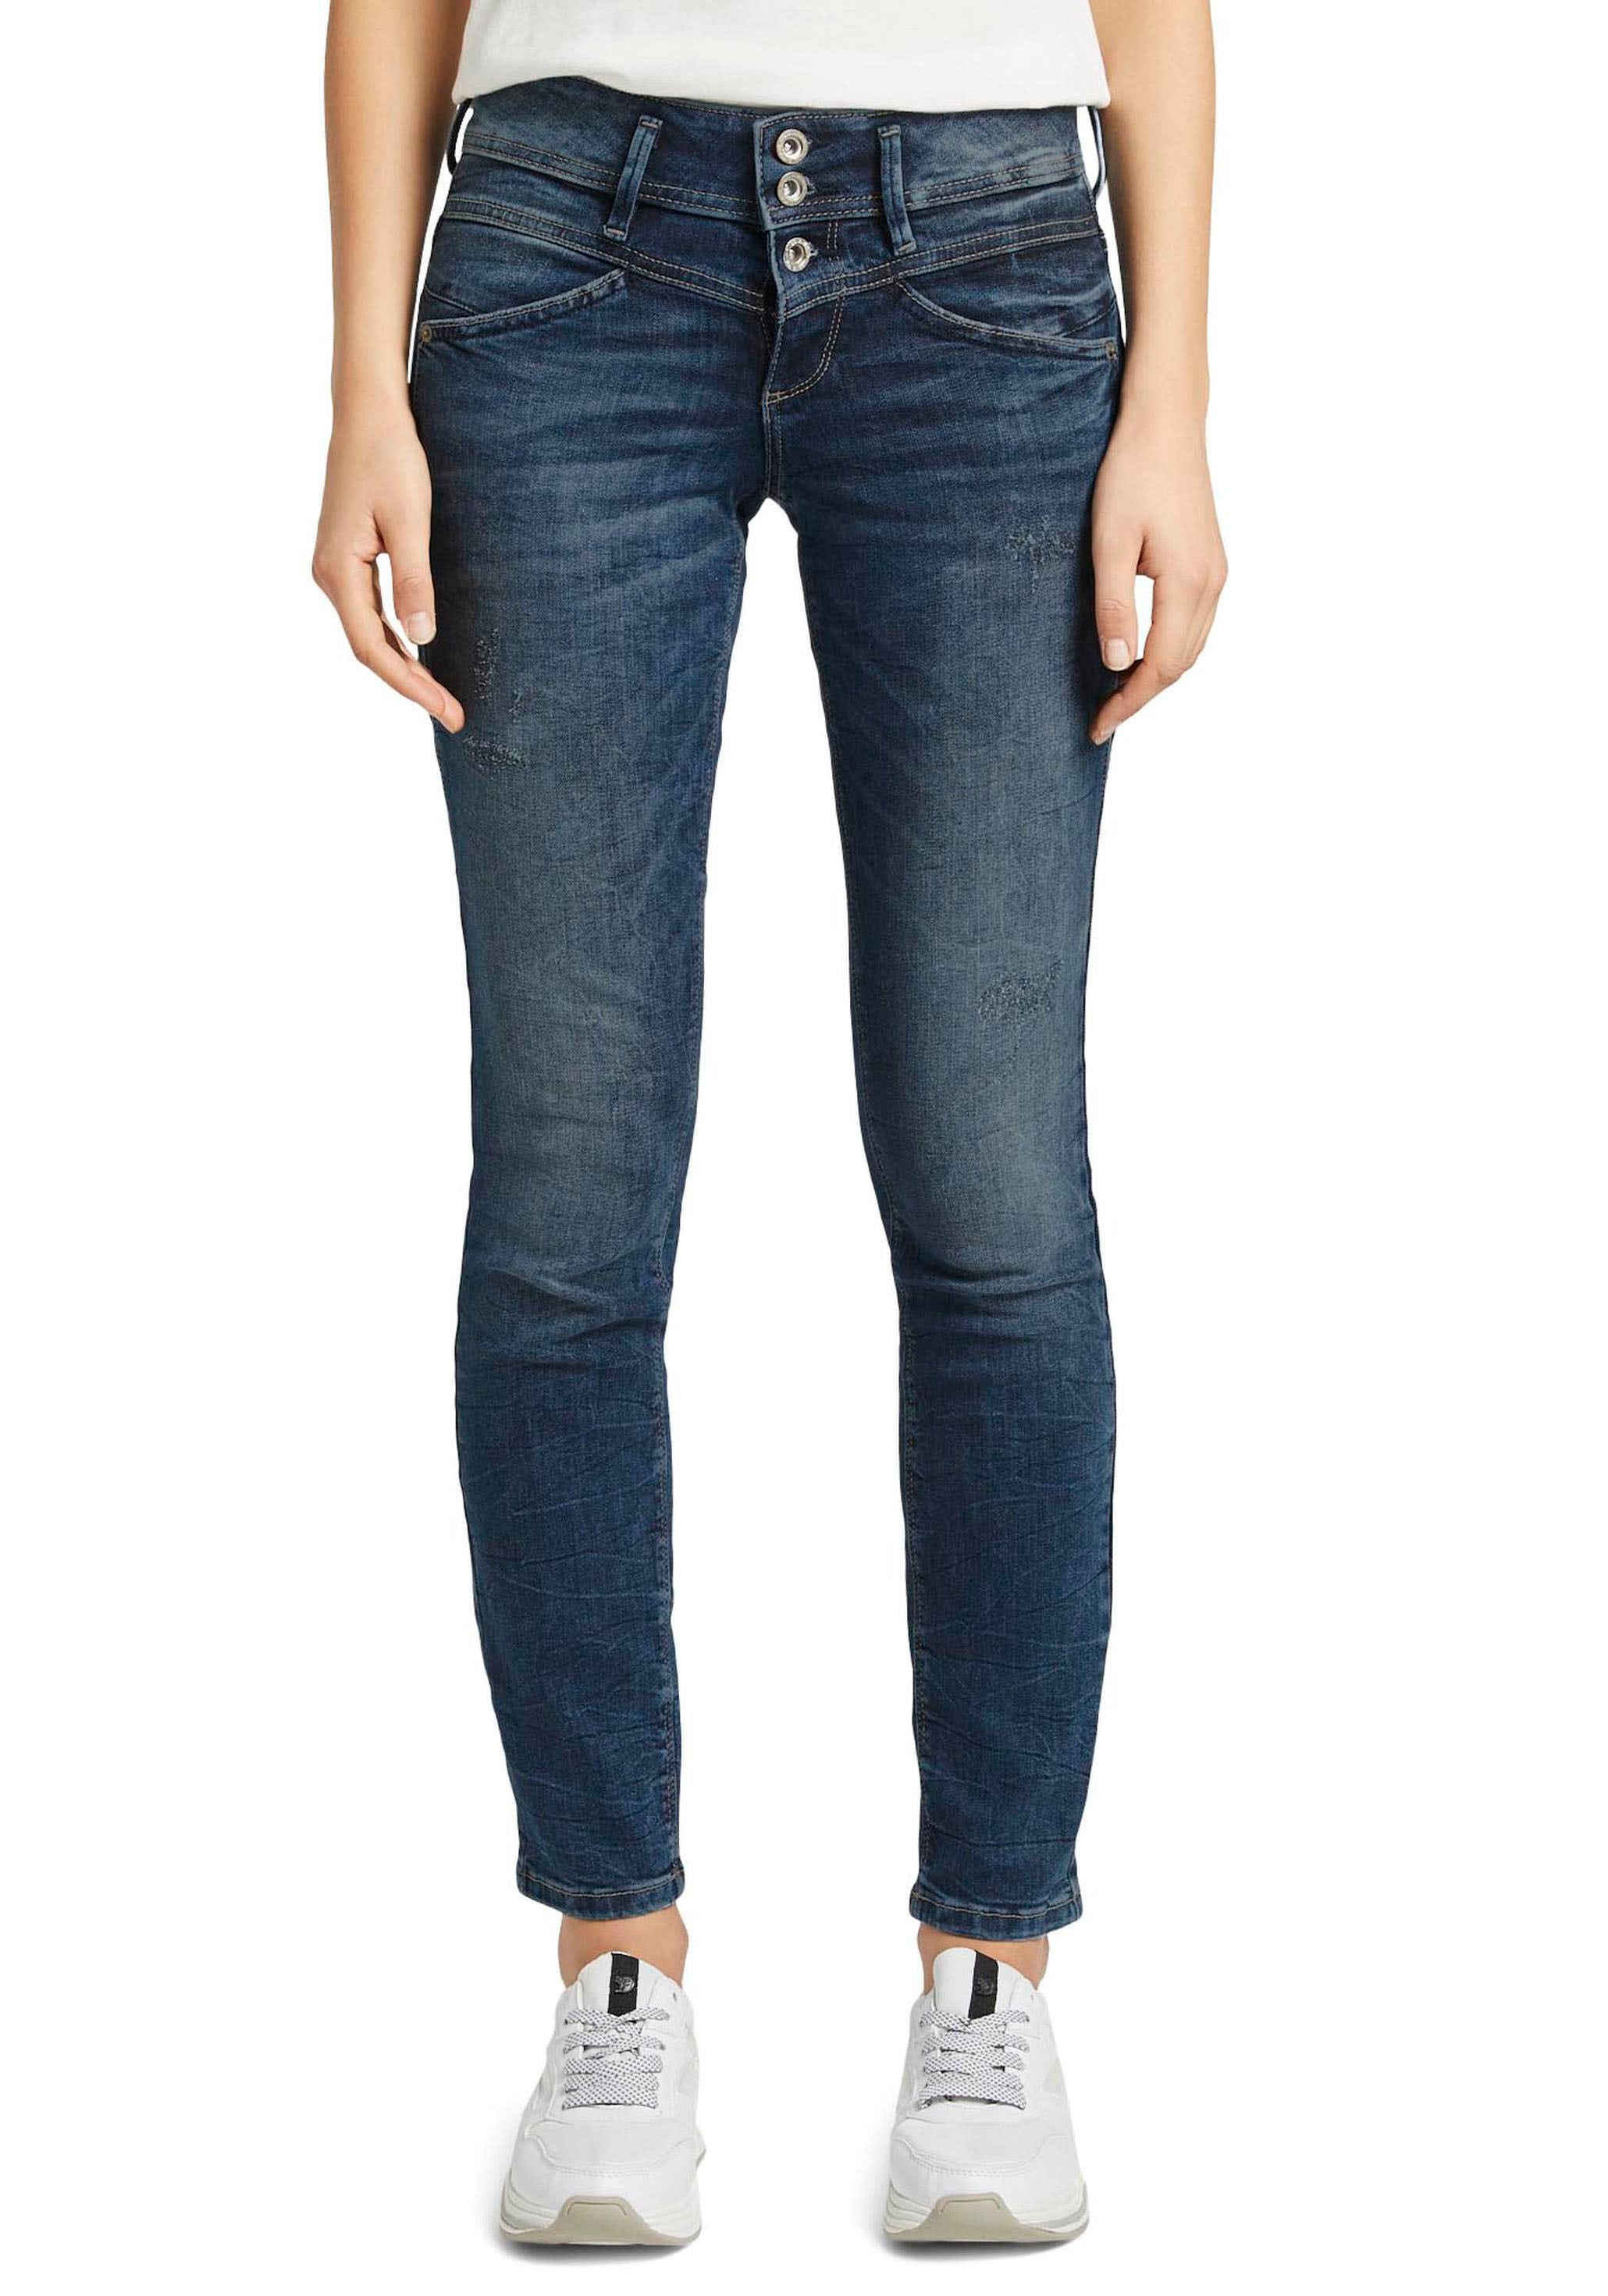 Damen Jeans große kaufen online Größen jetzt